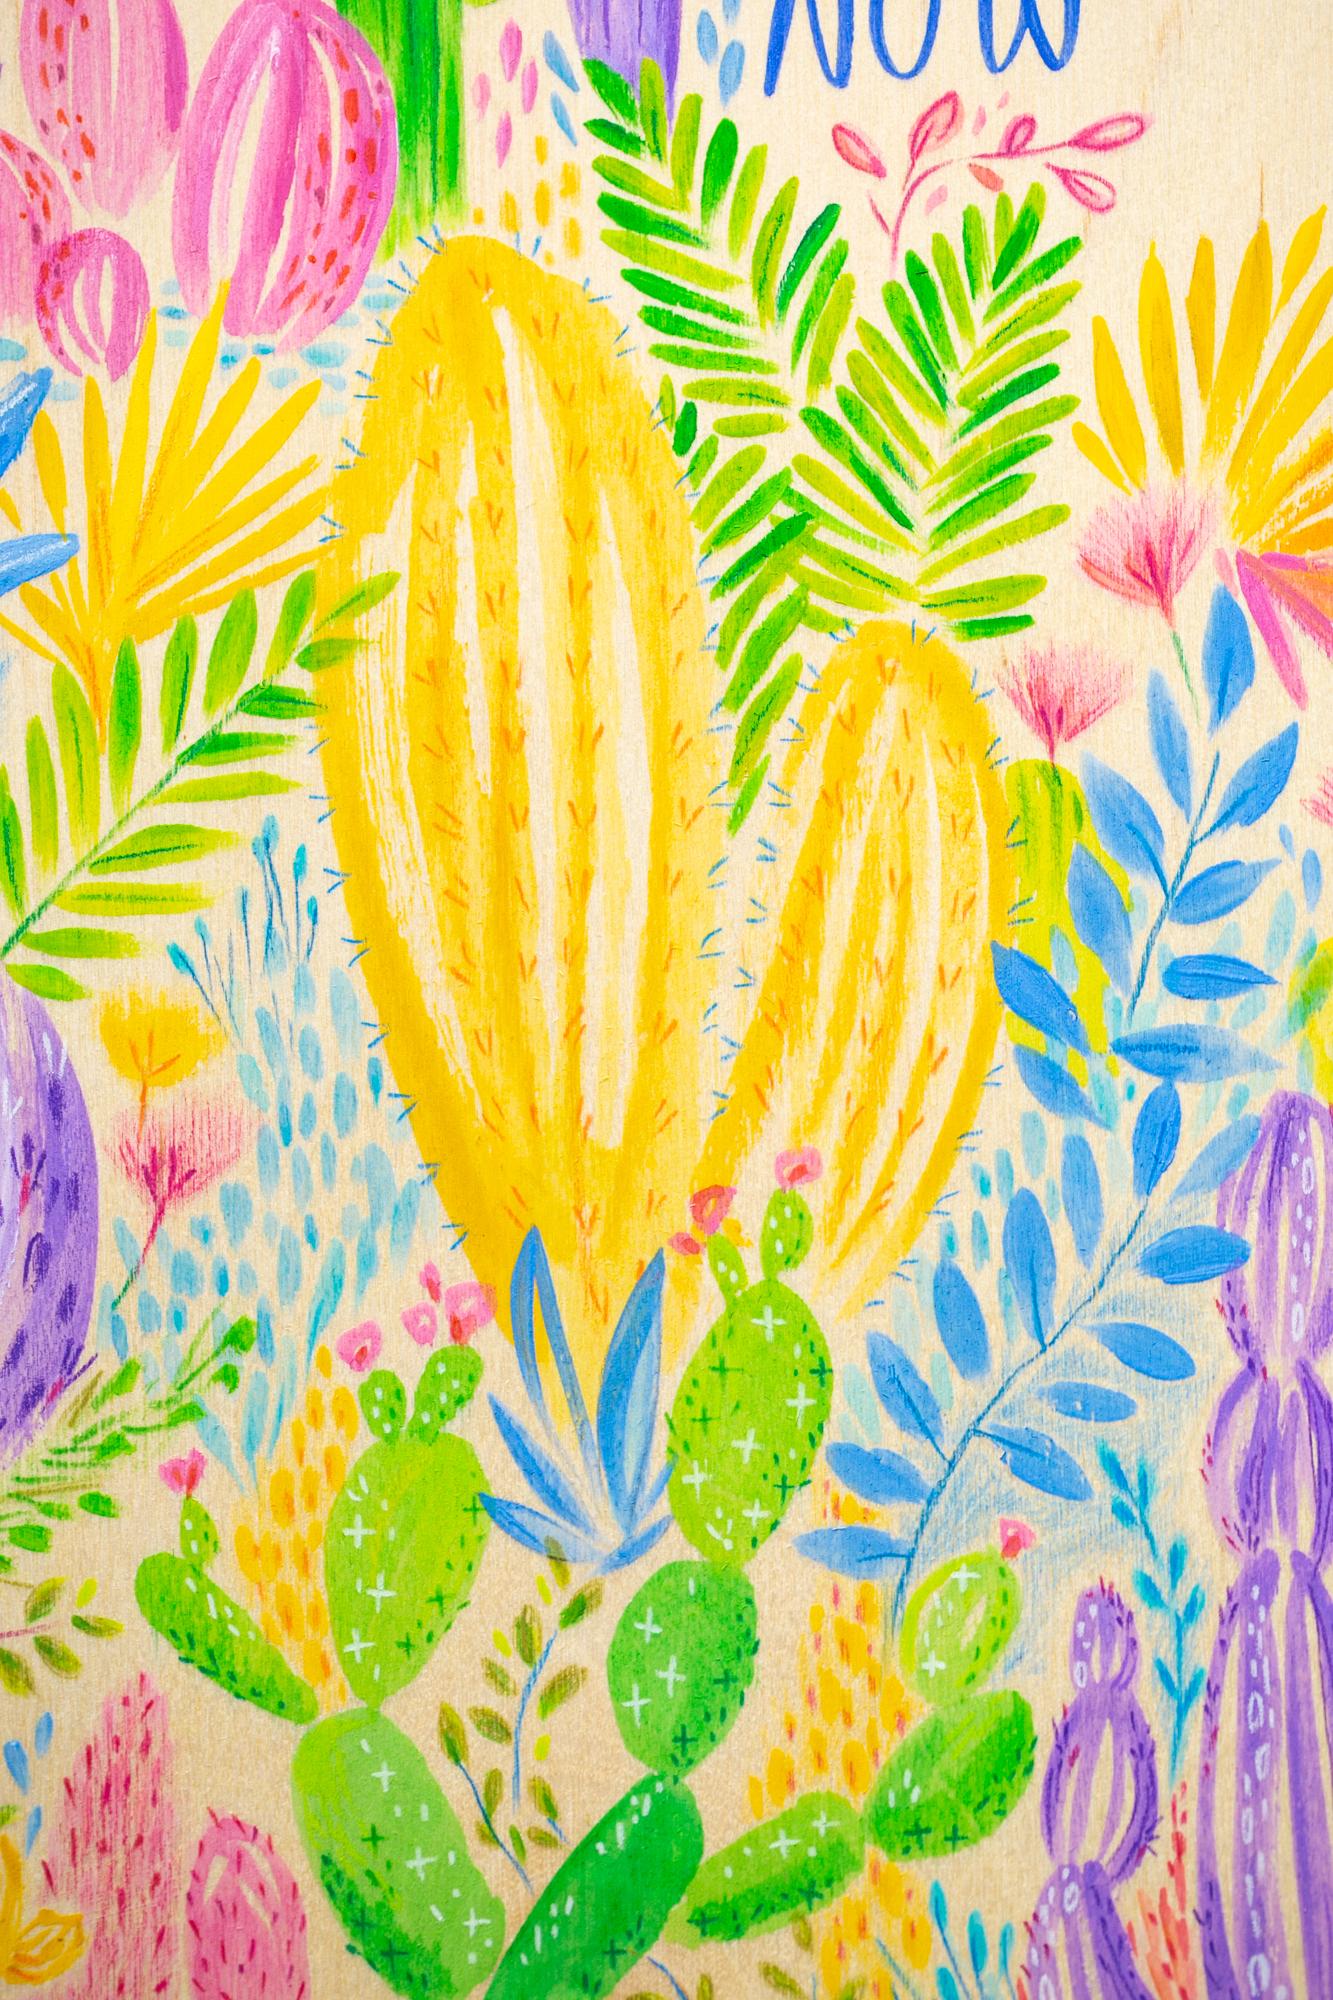 « Be Here Now », peinture florale, texte, bois exposé, couleurs vives et vives - Contemporain Art par Melissa Lomax